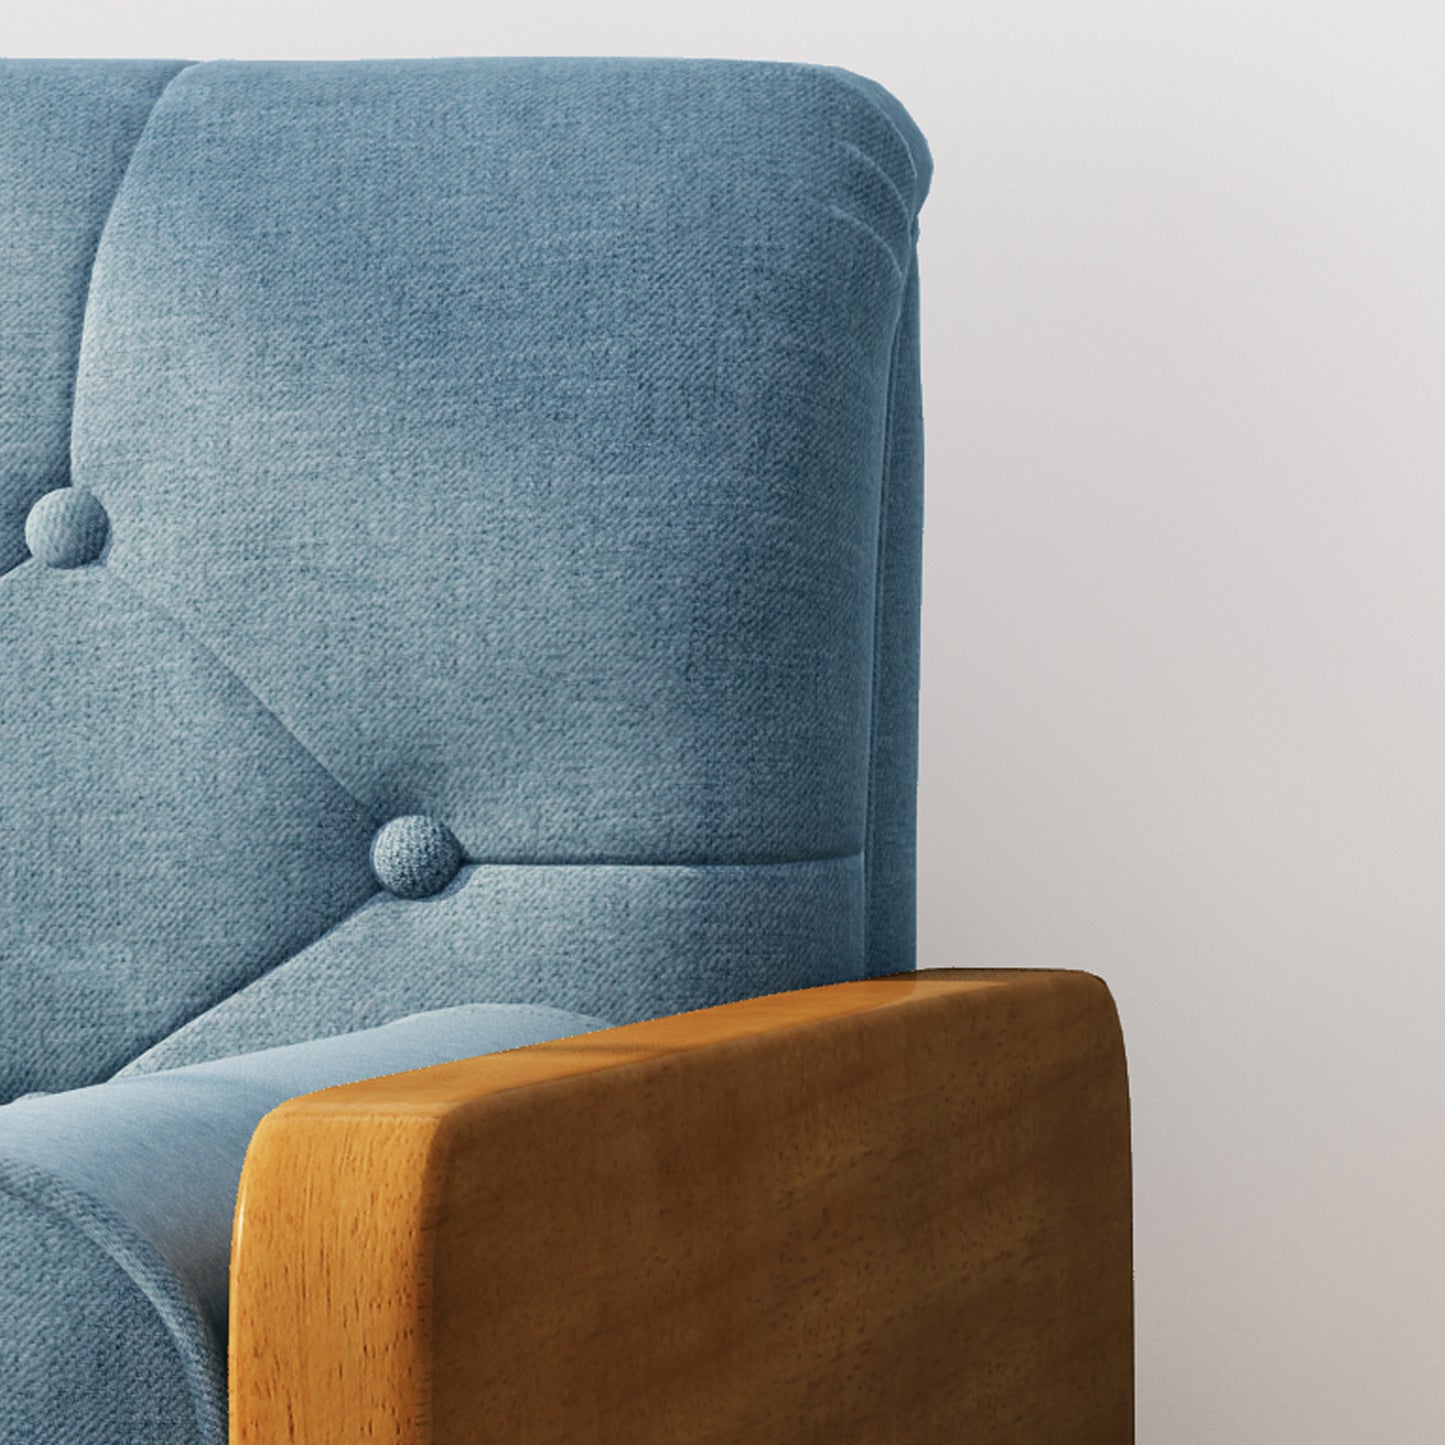 Greta Mid Century Modern Fabric Club Chair